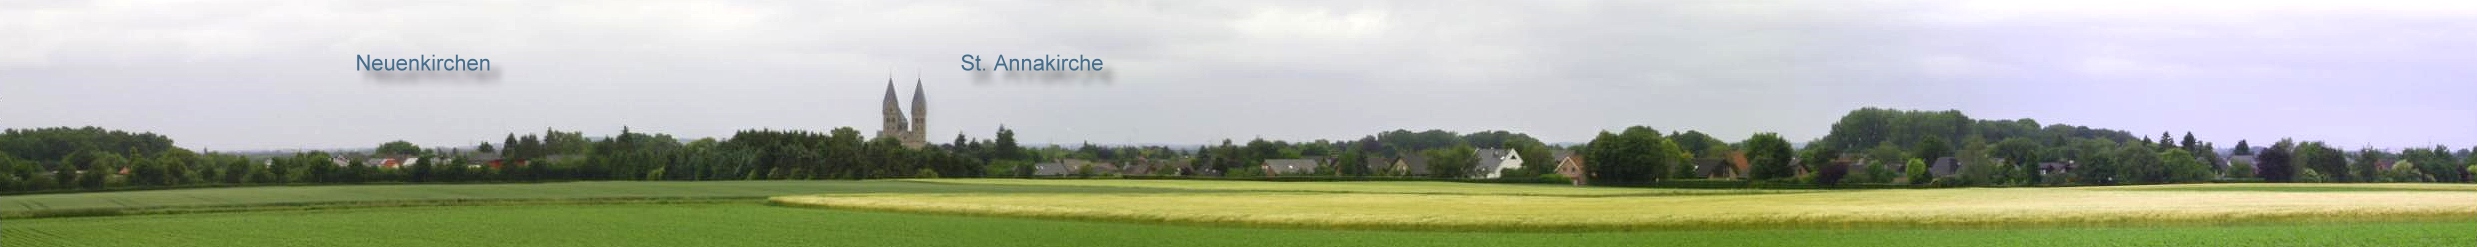 Panorama von Neuenkirchen